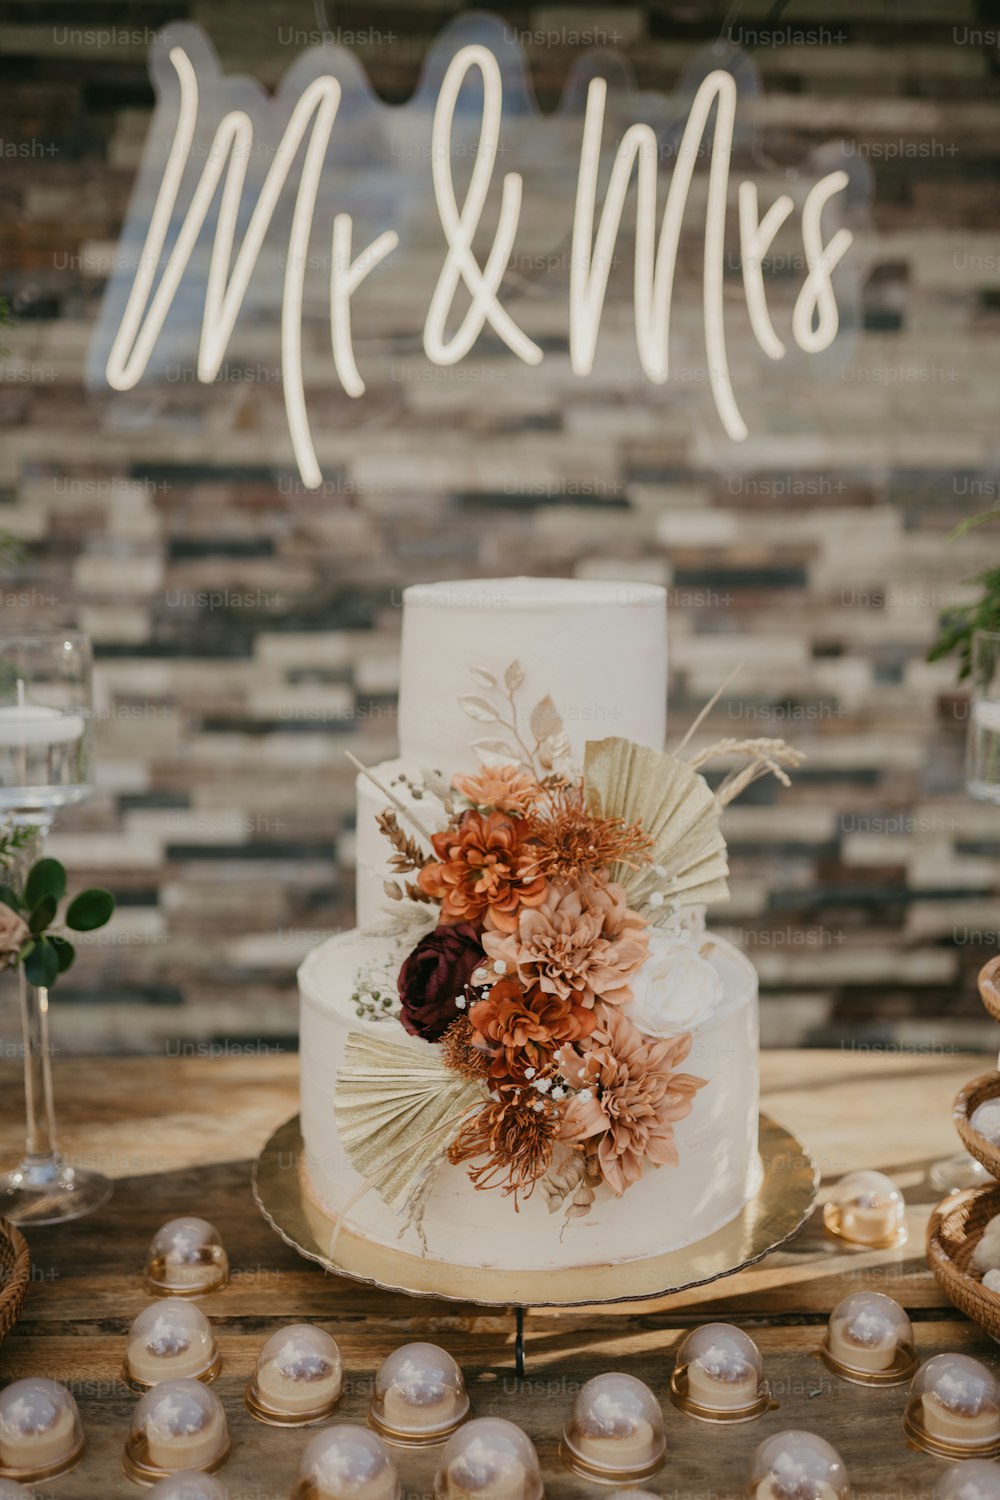 Eine Hochzeitstorte mit Blumen auf einem Tisch